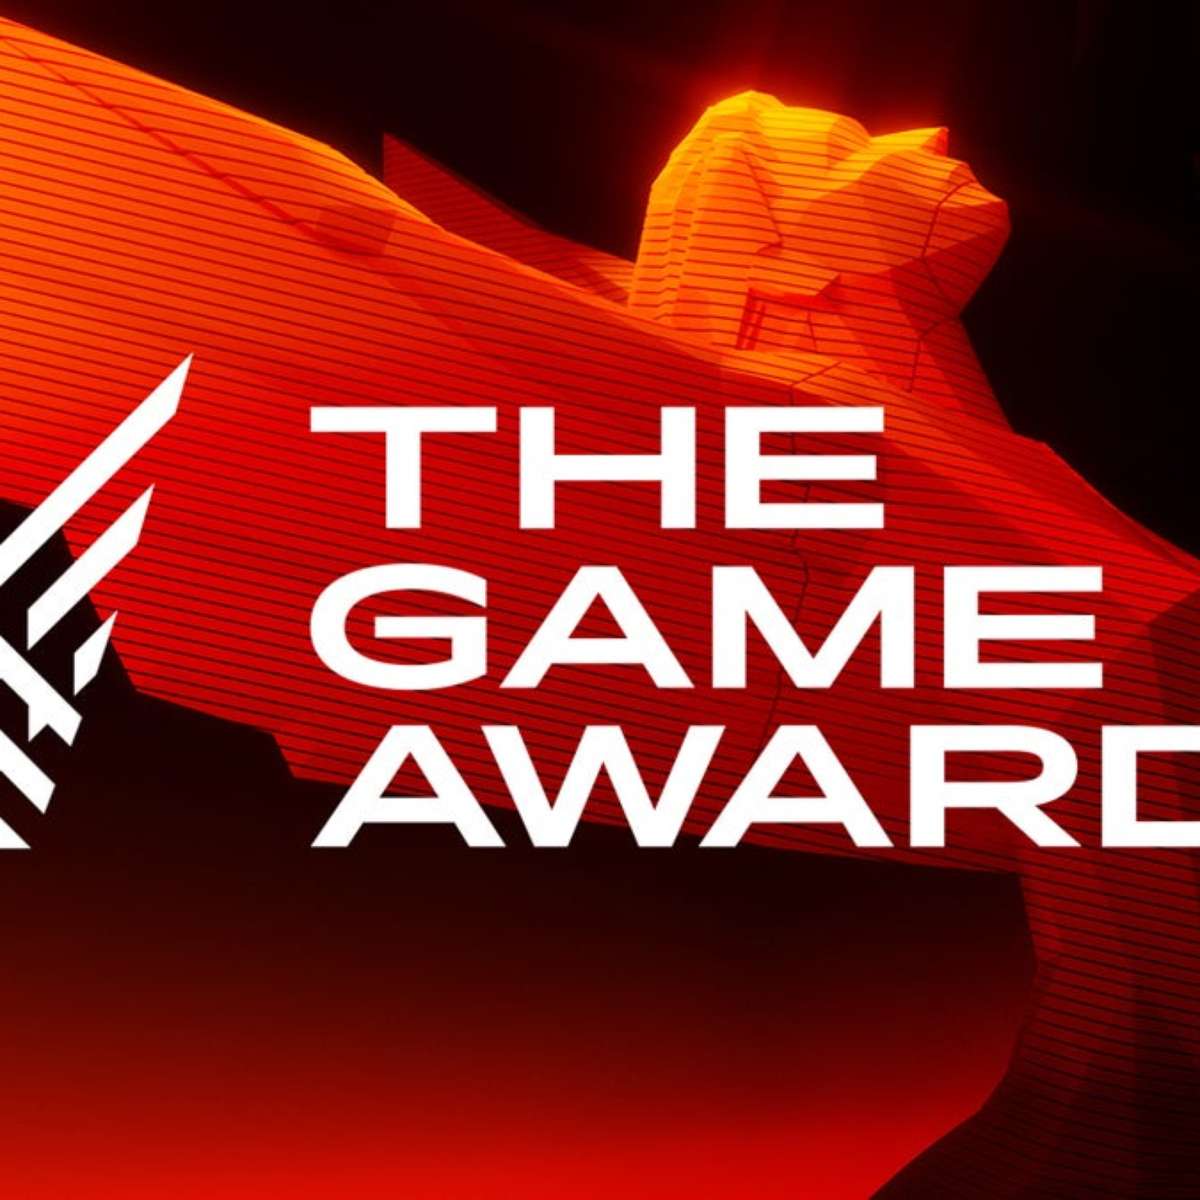 Lista de indicados ao The Game Awards é revelada e Baldur's Gate 3